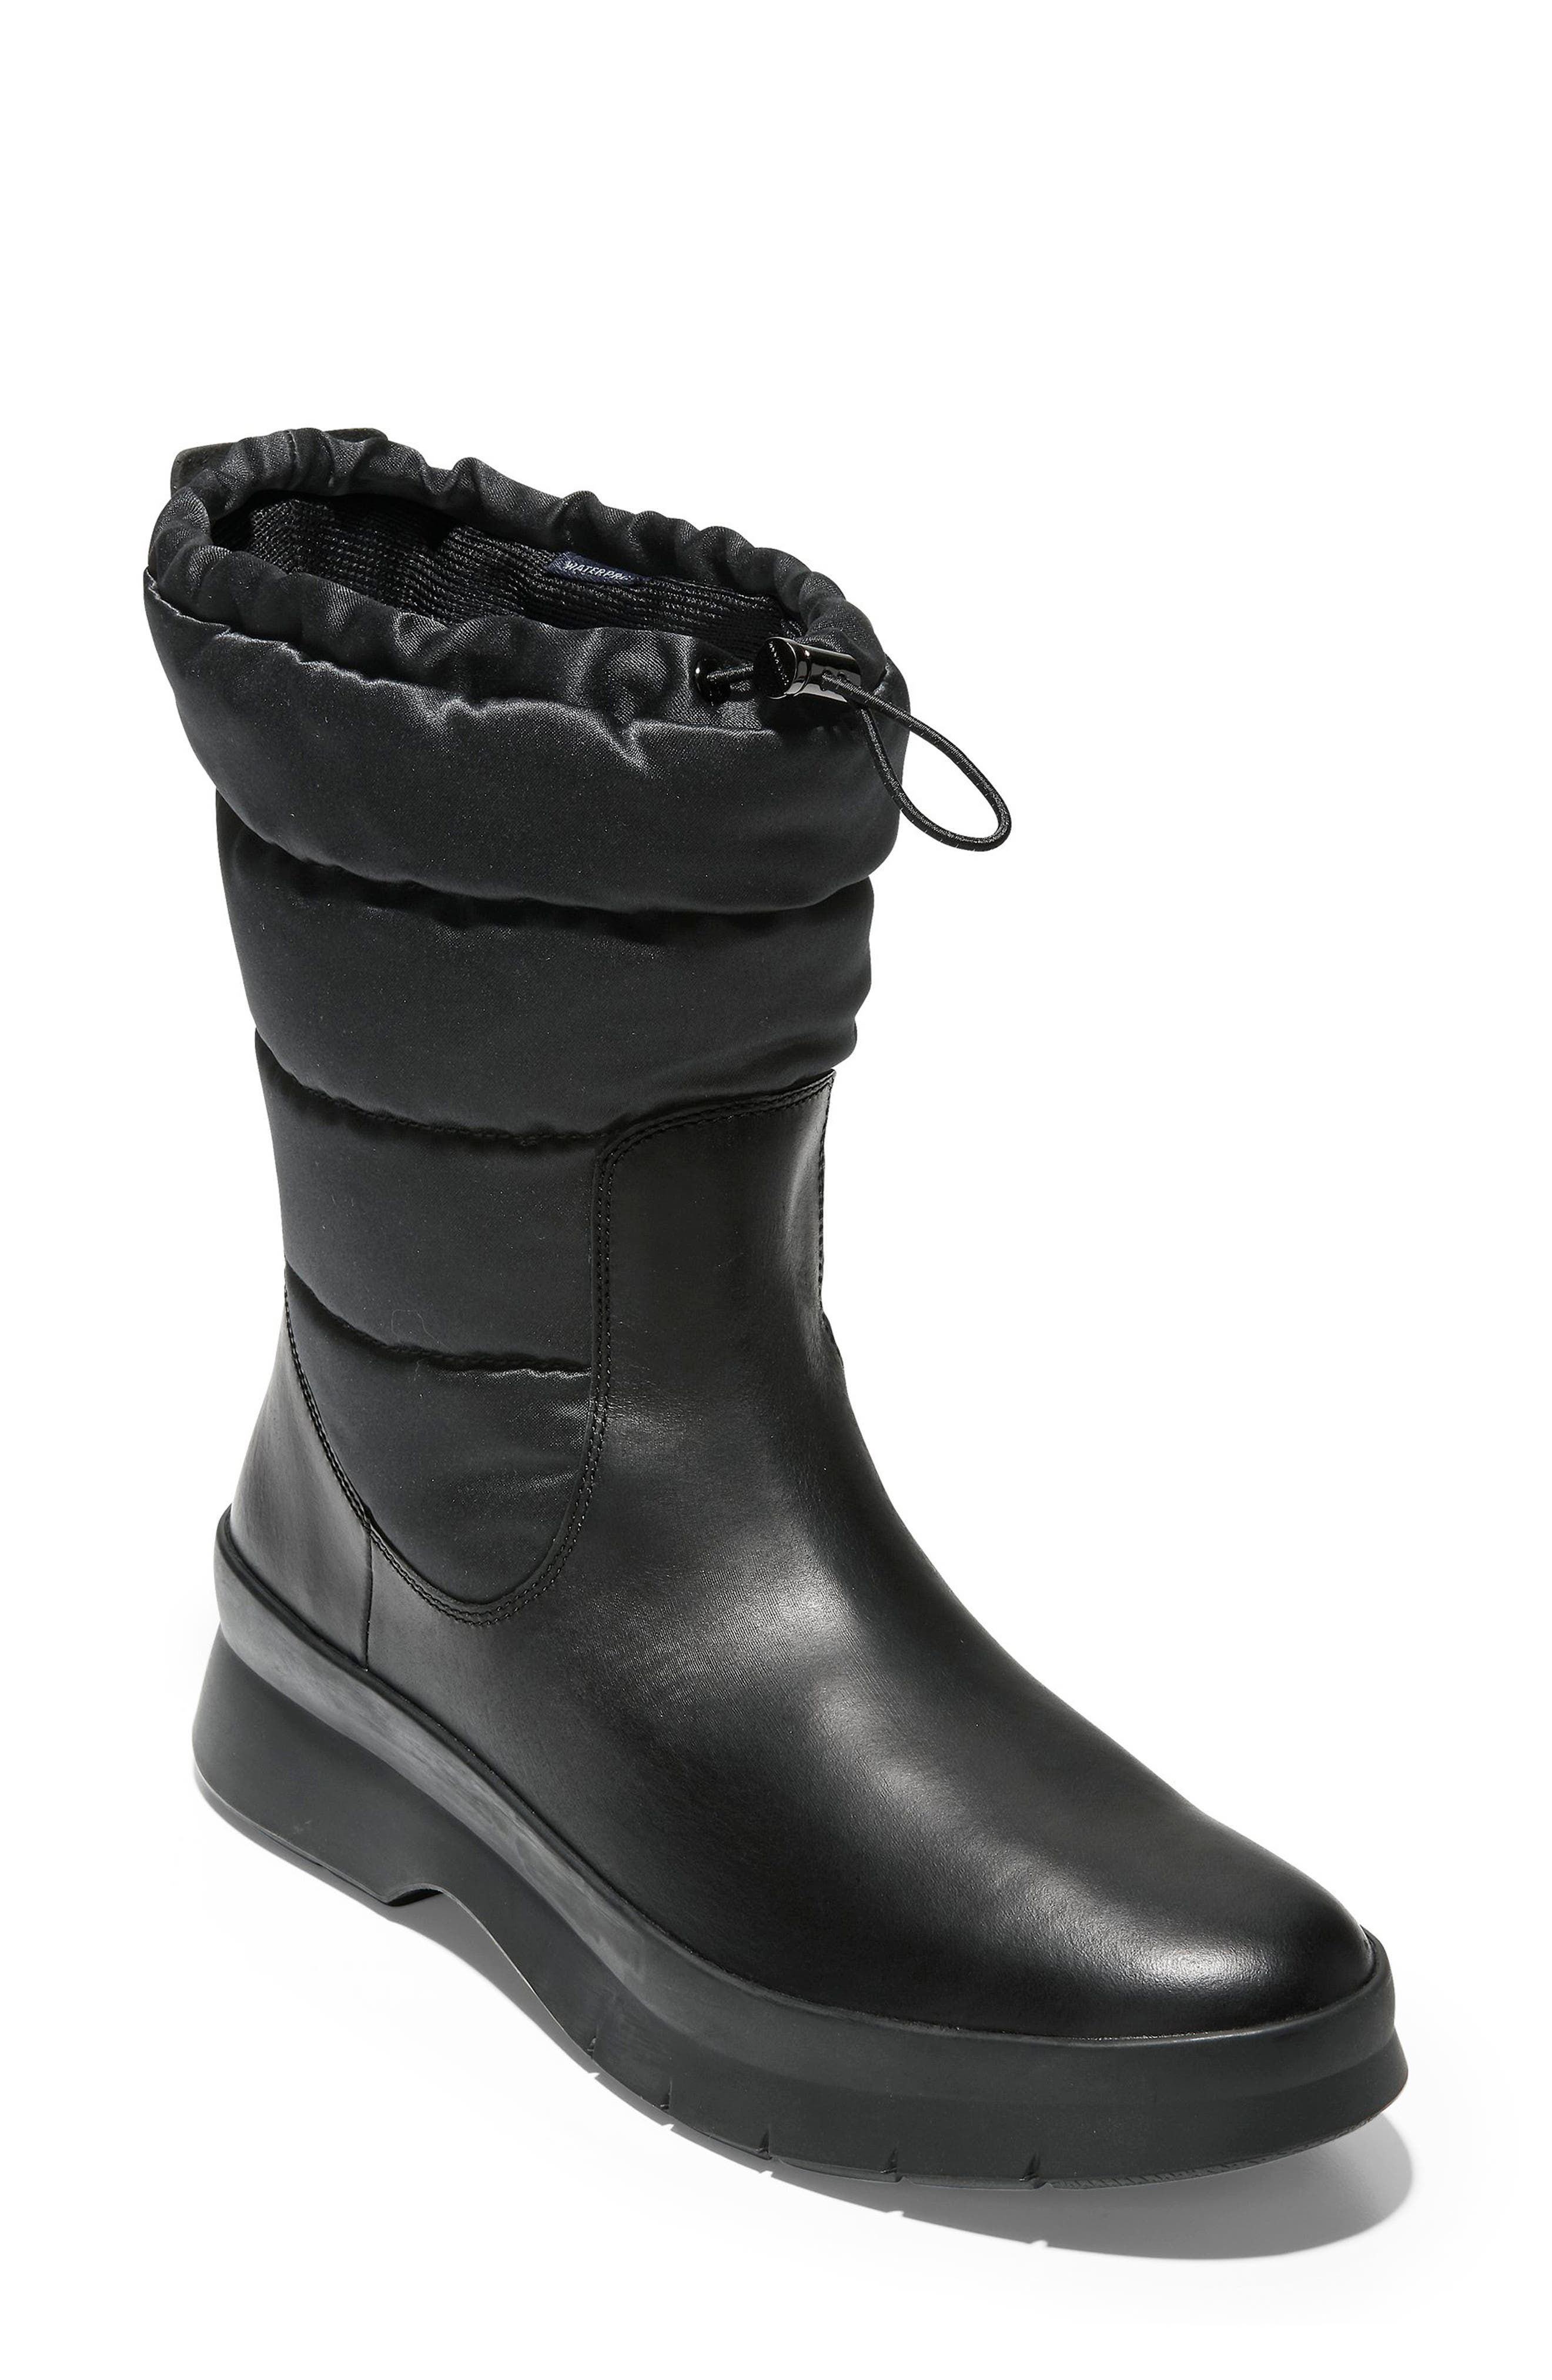 cole haan women's boots nordstrom